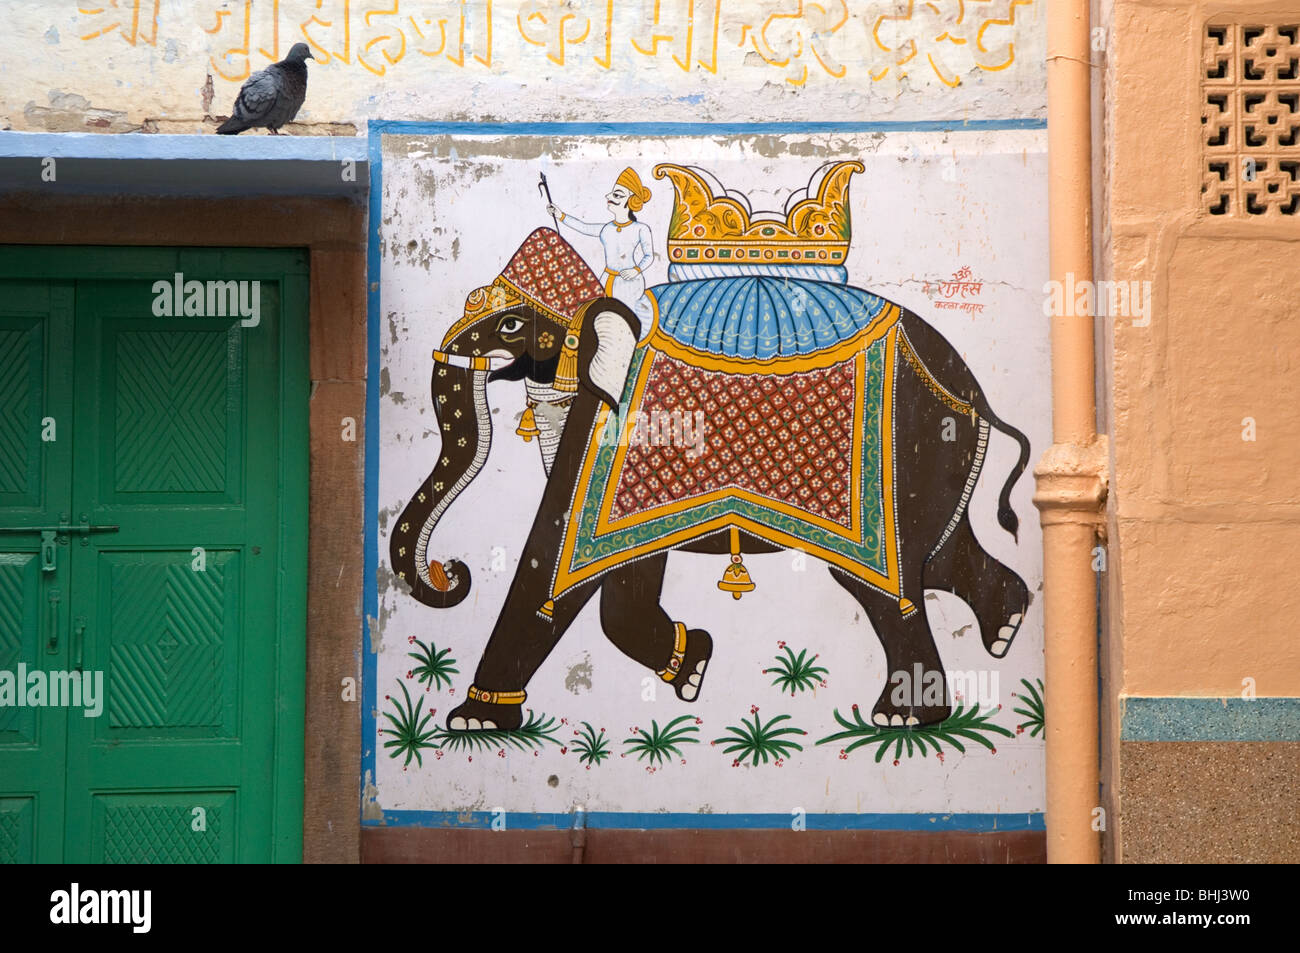 Panneau de bienvenue à l'éléphant. La couleur bleu-peint rues de la vieille ville de Jodhpur, Rajasthan, India Banque D'Images